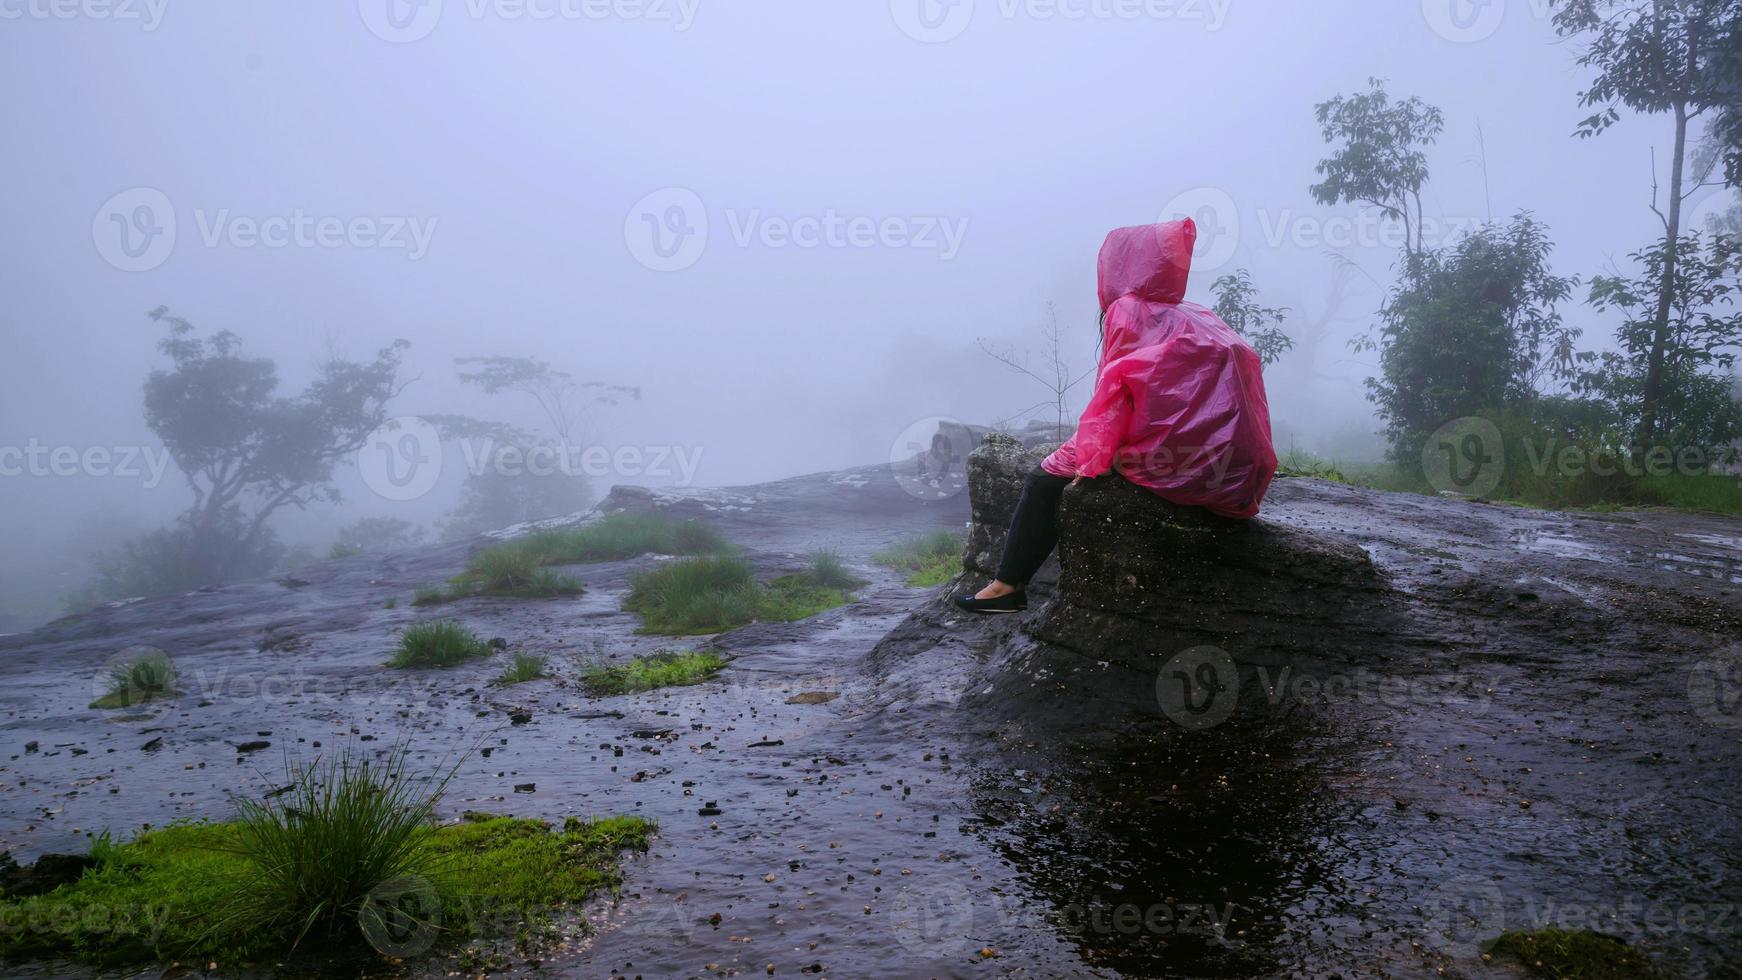 touriste avec manteau de pluie rose assis voir le paysage naturel beau brouillard tactile au parc national de phu hin rong kla. voyage nature, voyage détente, voyage thaïlande, saison des pluies. photo